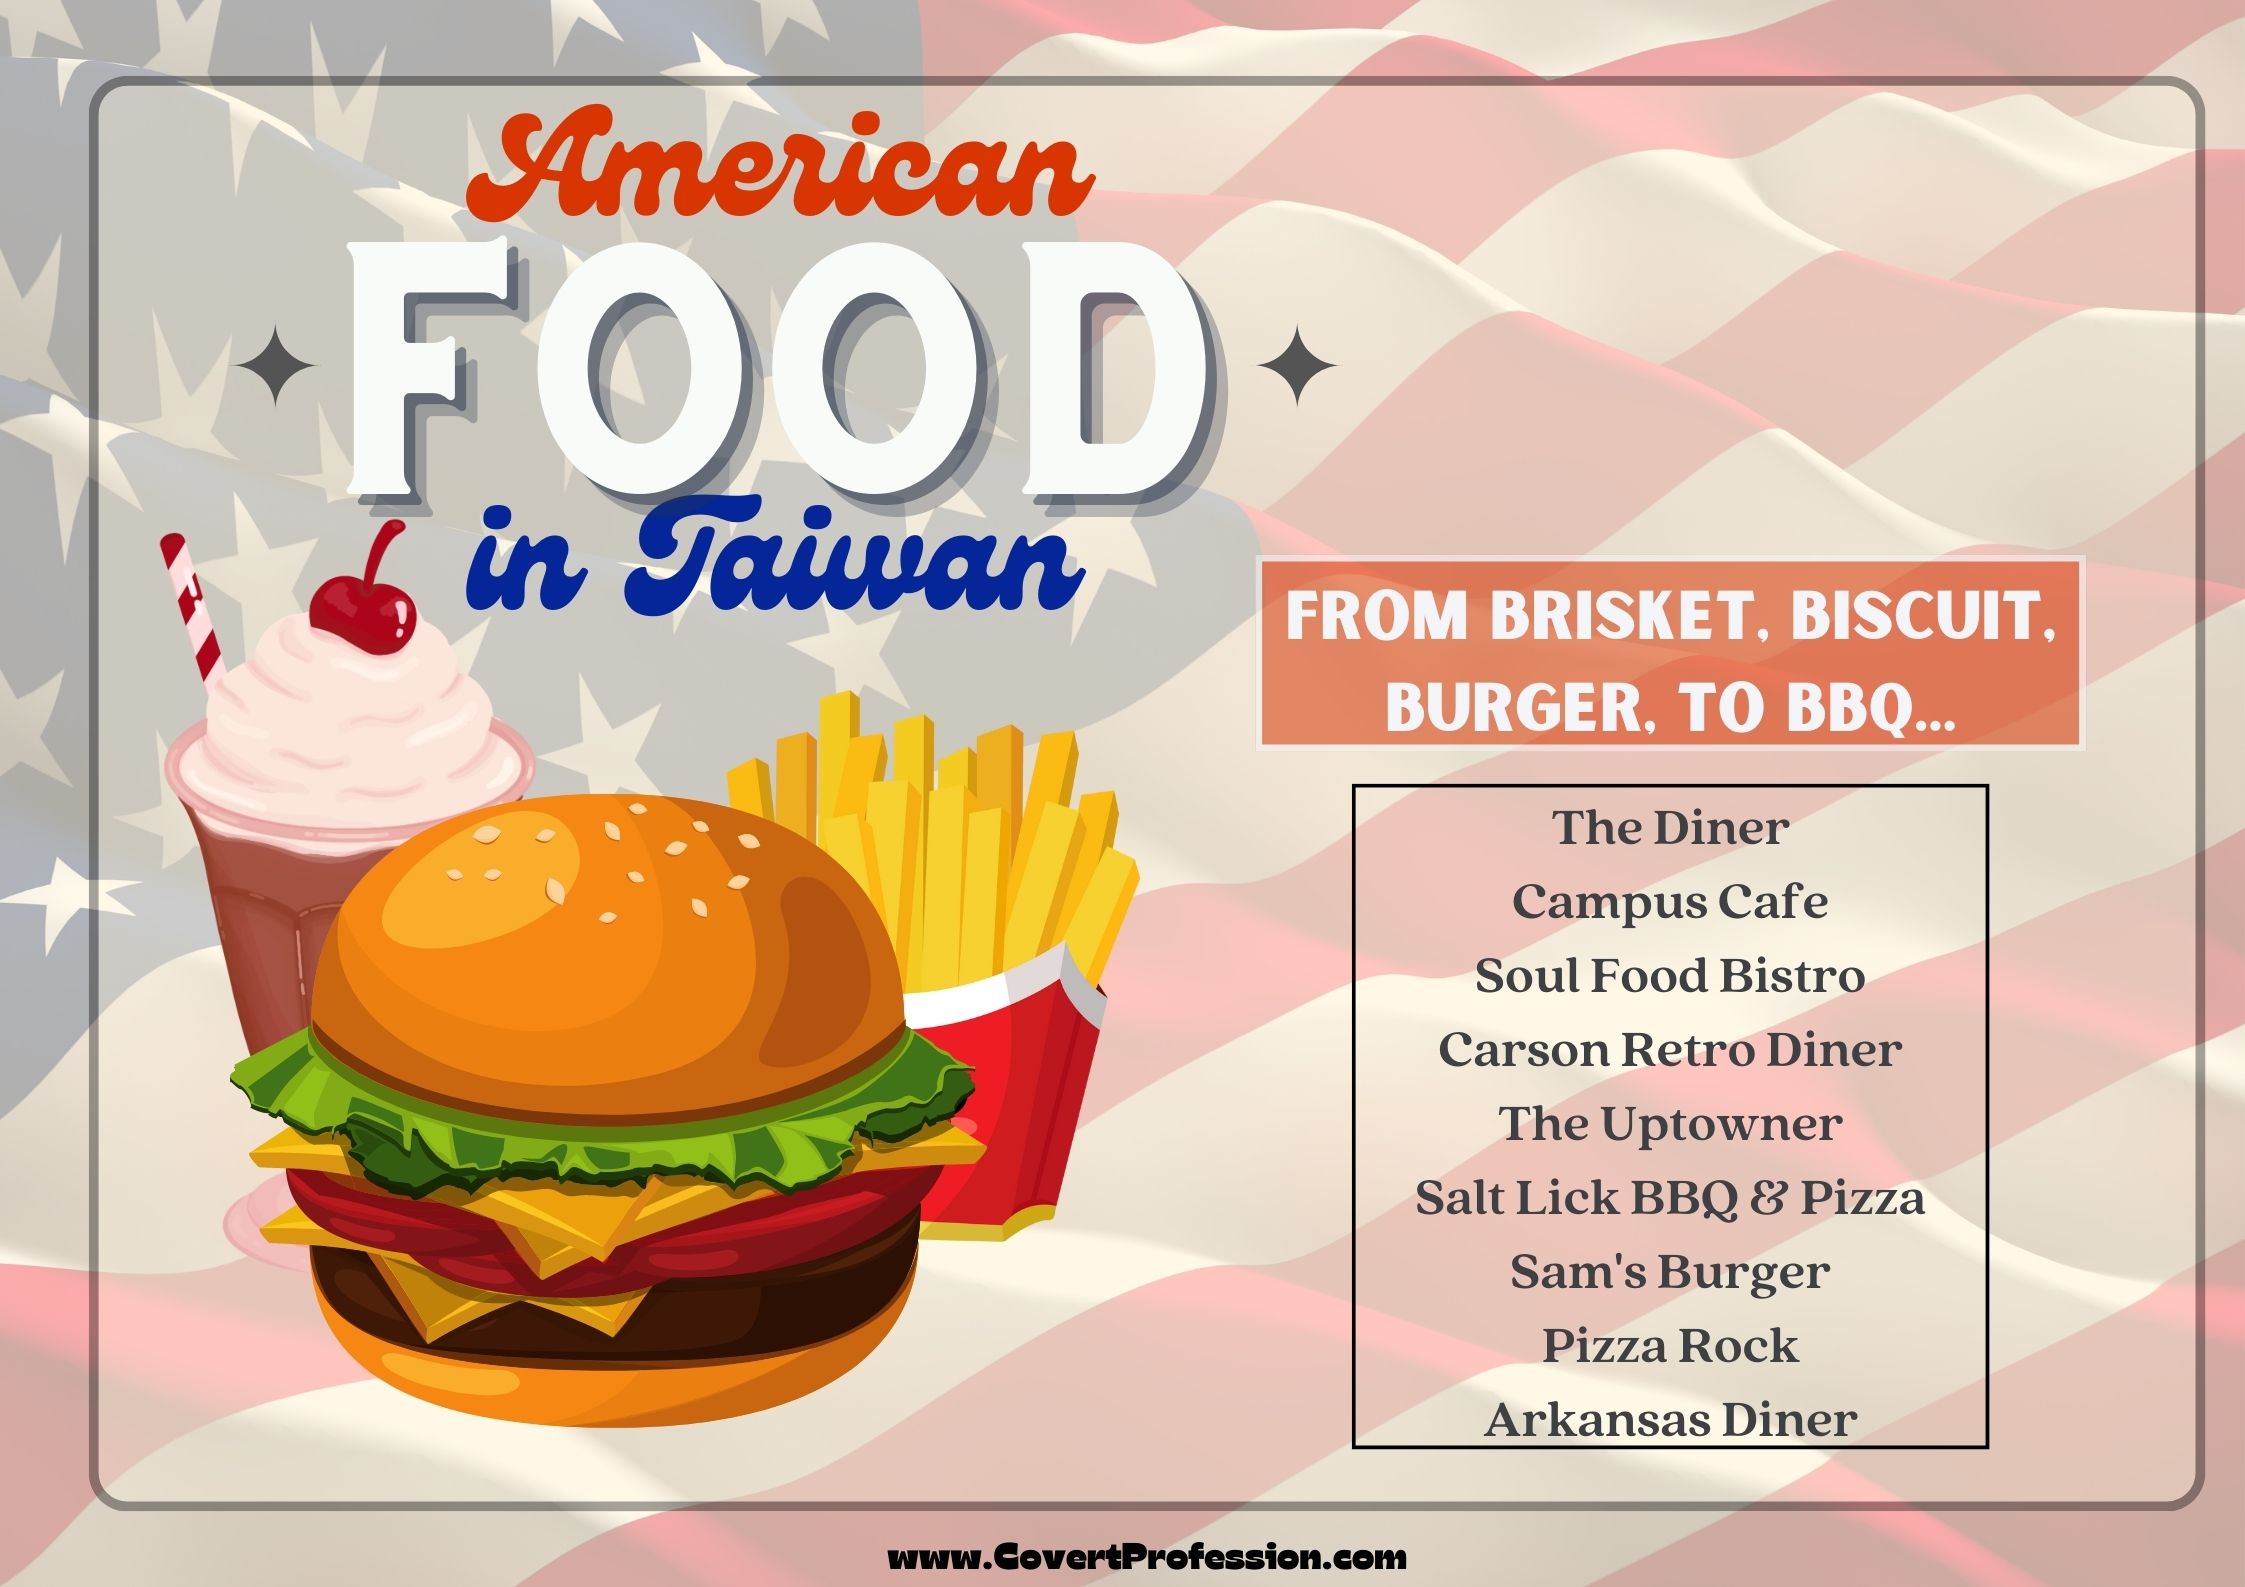 American food in Taiwan